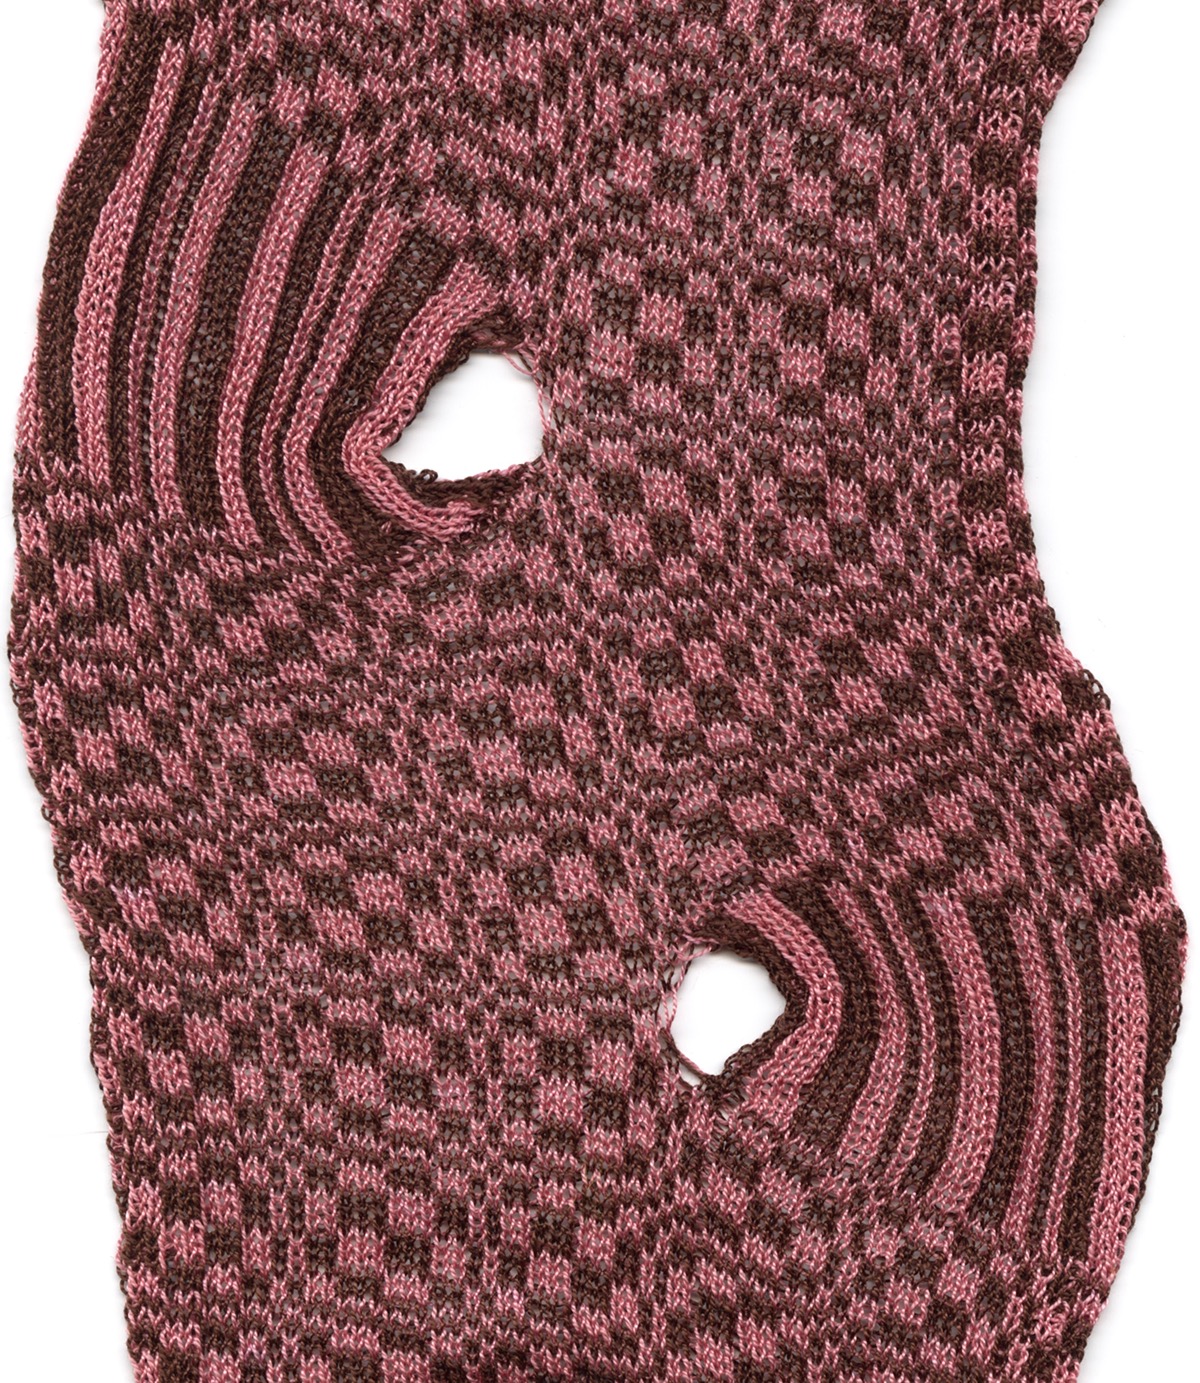 knit knits knitting knitwear machine knitting machine knit Patterns Textiles